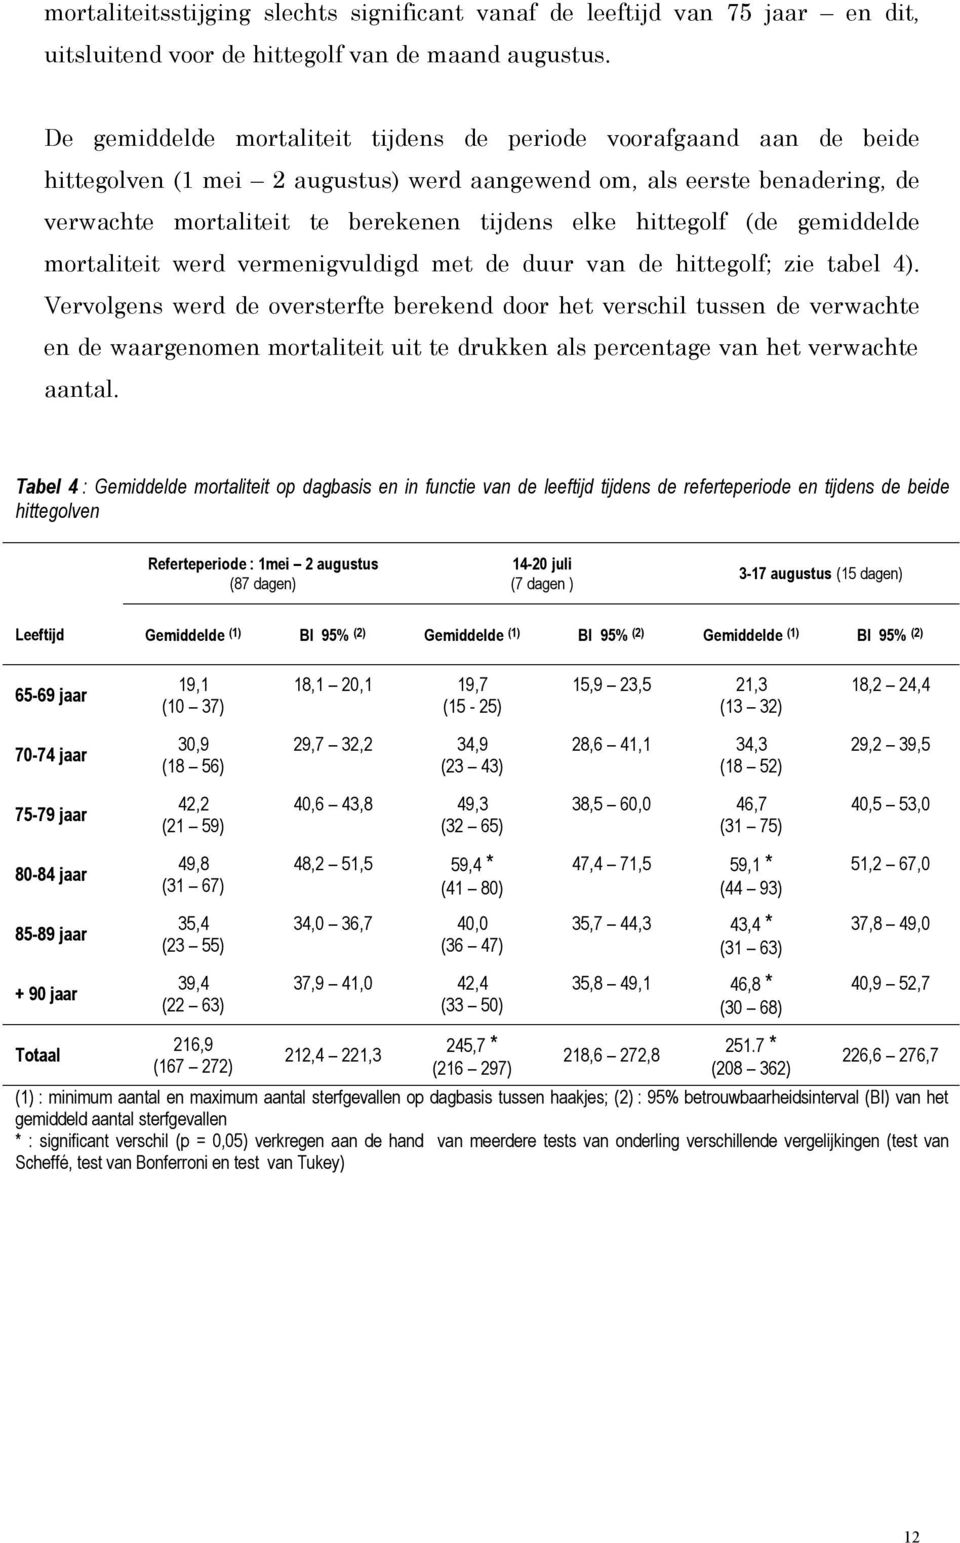 hittegolf (de gemiddelde mortaliteit werd vermenigvuldigd met de duur van de hittegolf; zie tabel 4).